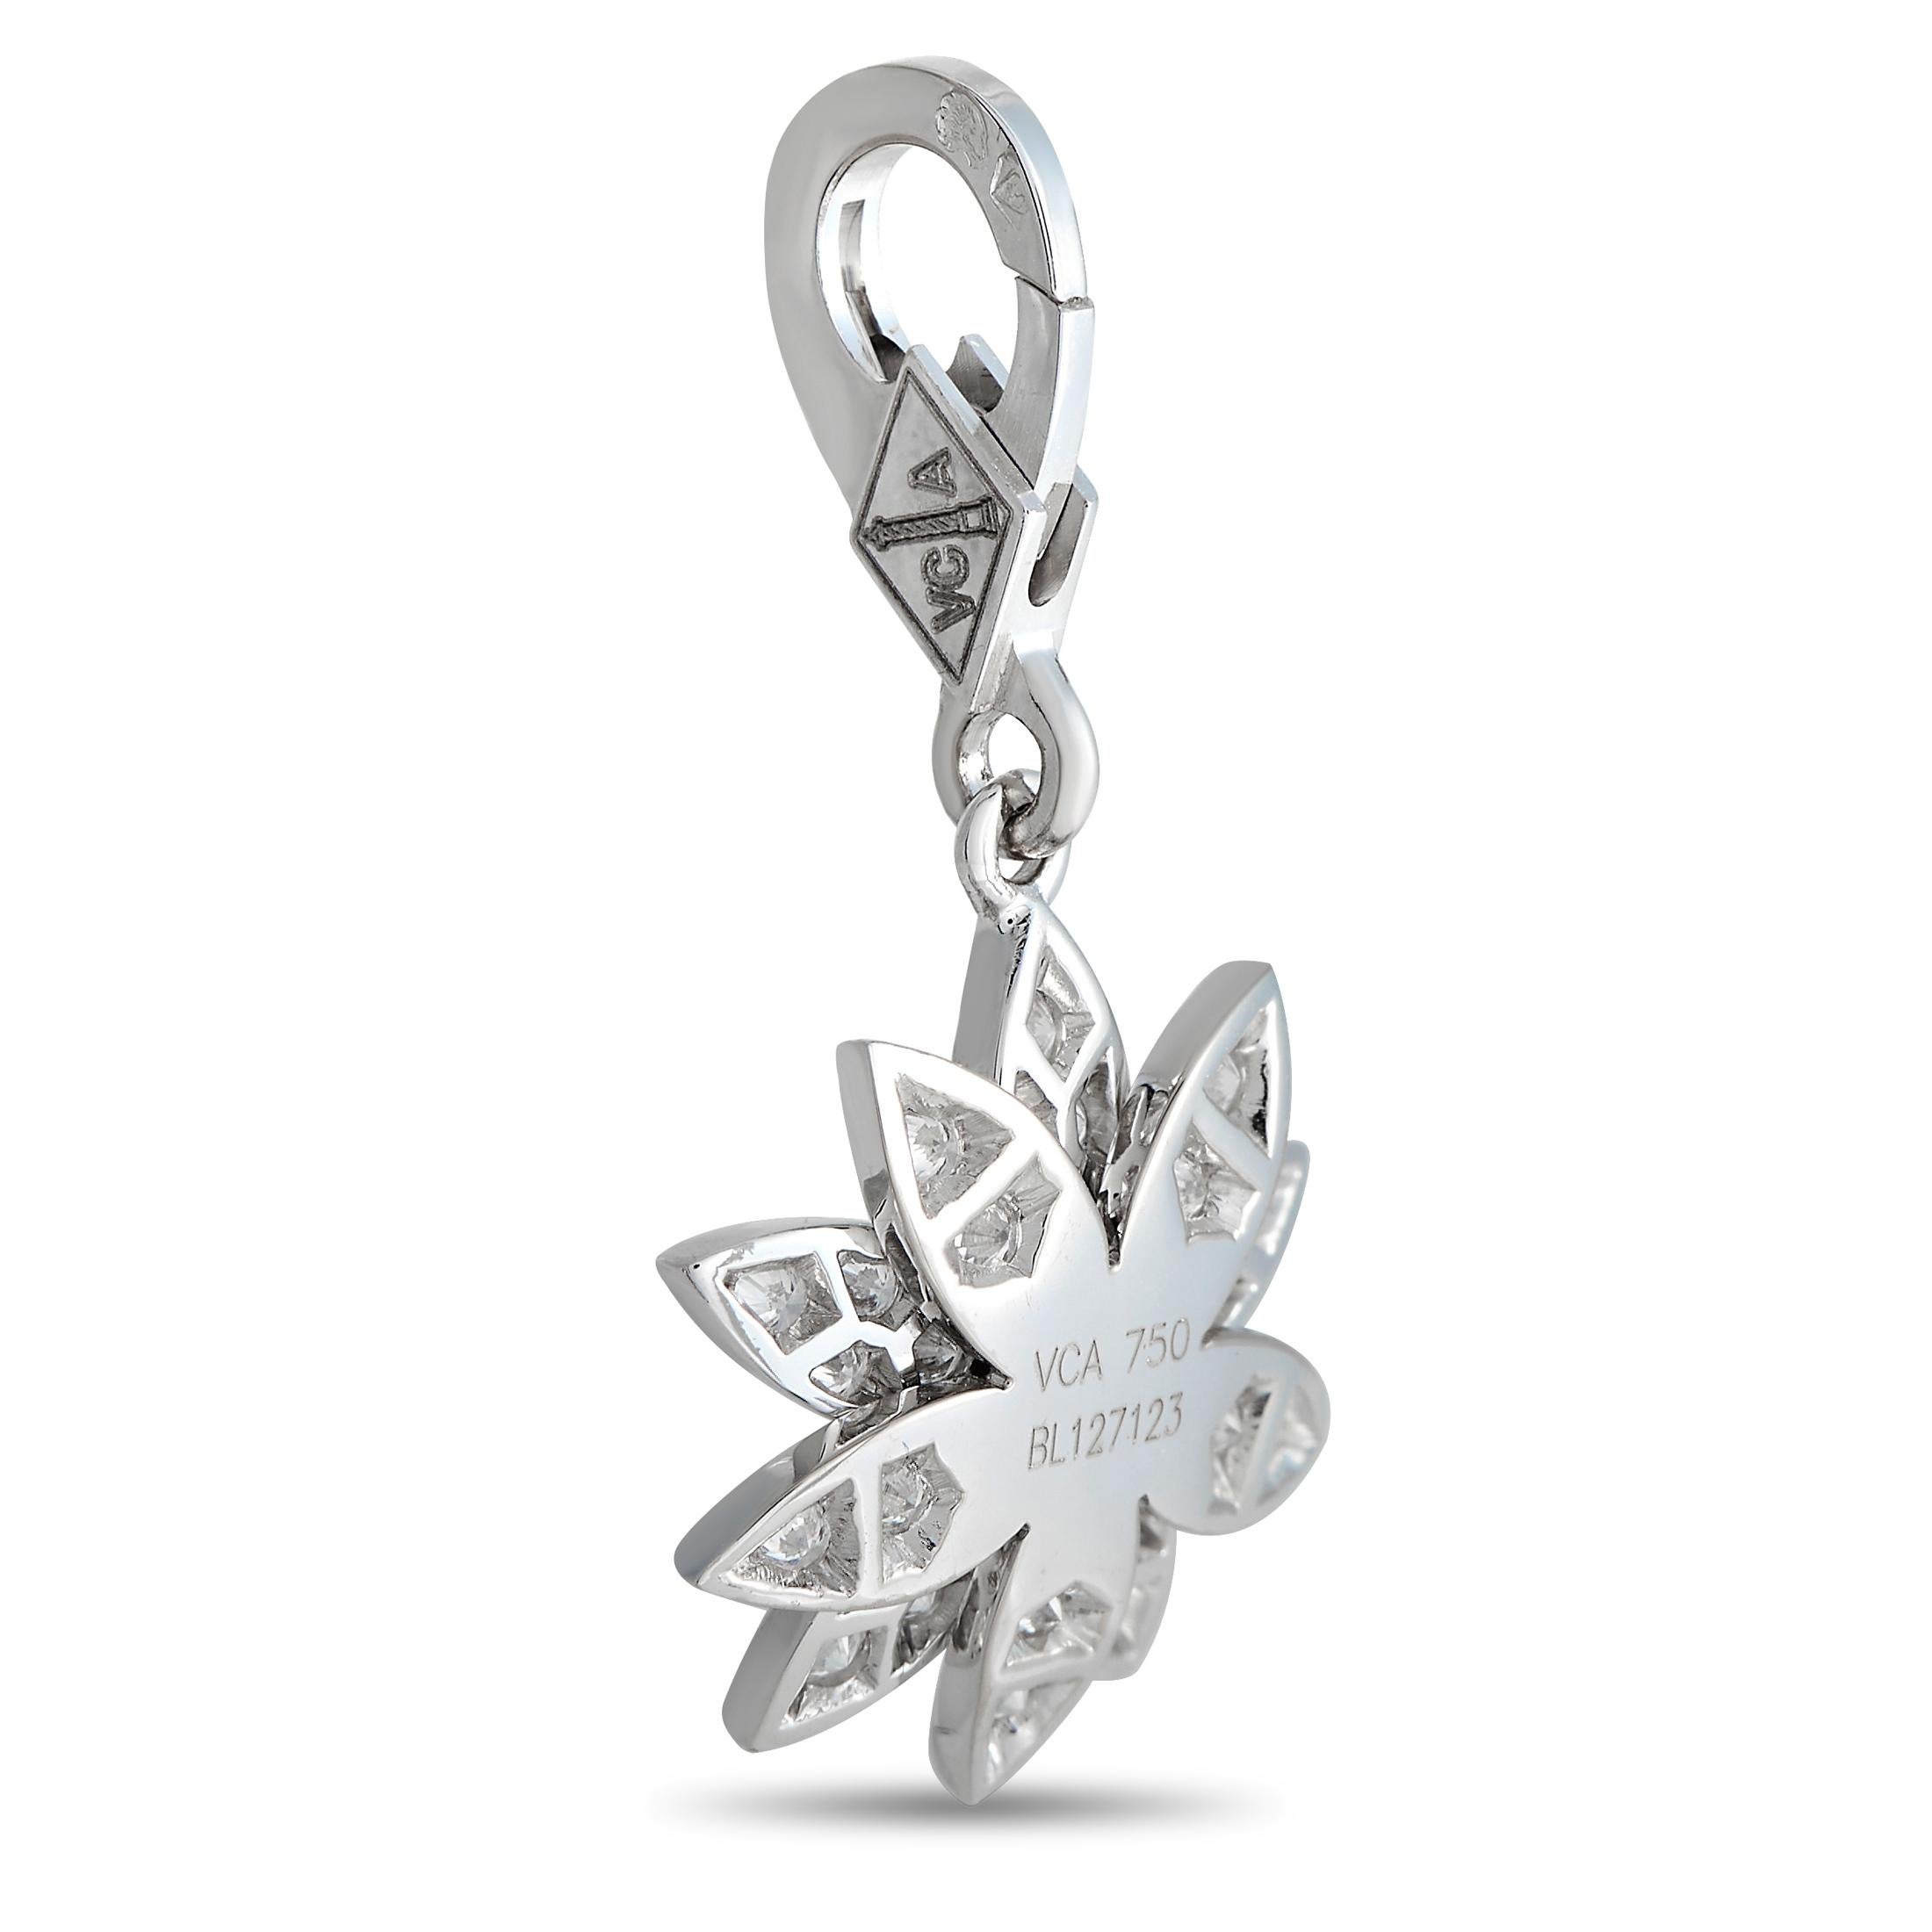 Ce charme étincelant de la Collection Lotus de Van Cleef & Arpels vous rappellera votre beauté et votre force intérieure. Whiting représente un lotus sculpté en or blanc dont les pétales sont recouverts de diamants brillants. La breloque du lotus